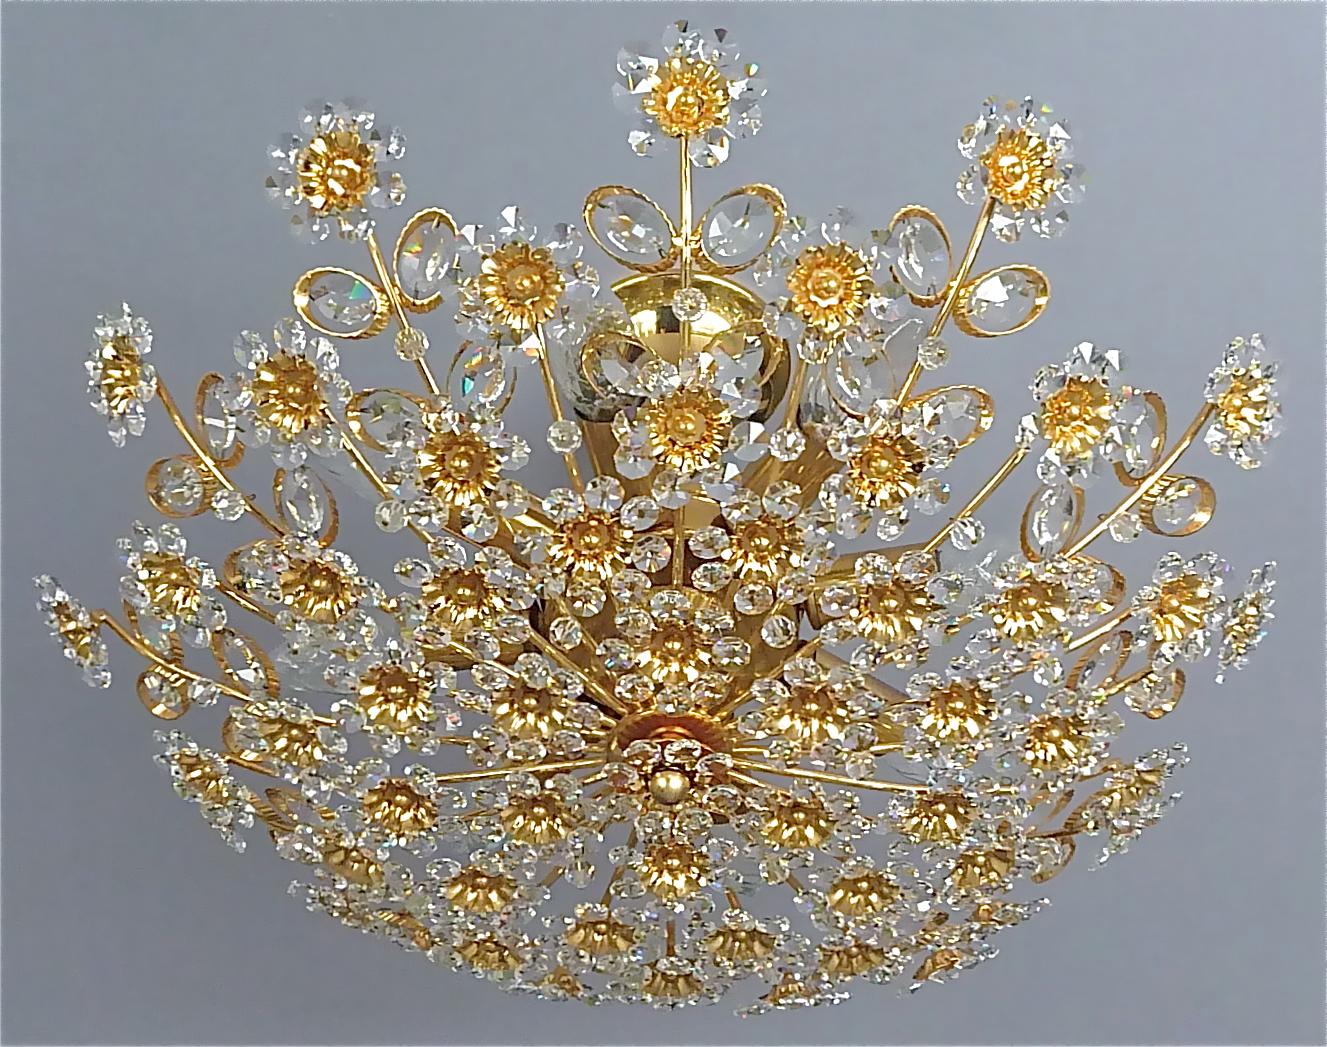 Il s'agit du numéro 2 sur les 3 disponibles.
Grand lustre encastré rond en laiton doré, métal, cristal, verre floral, fabriqué par Palwa, Allemagne, vers 1960-1970, documenté dans le catalogue de vente de Palwa, étiqueté avec l'autocollant de la